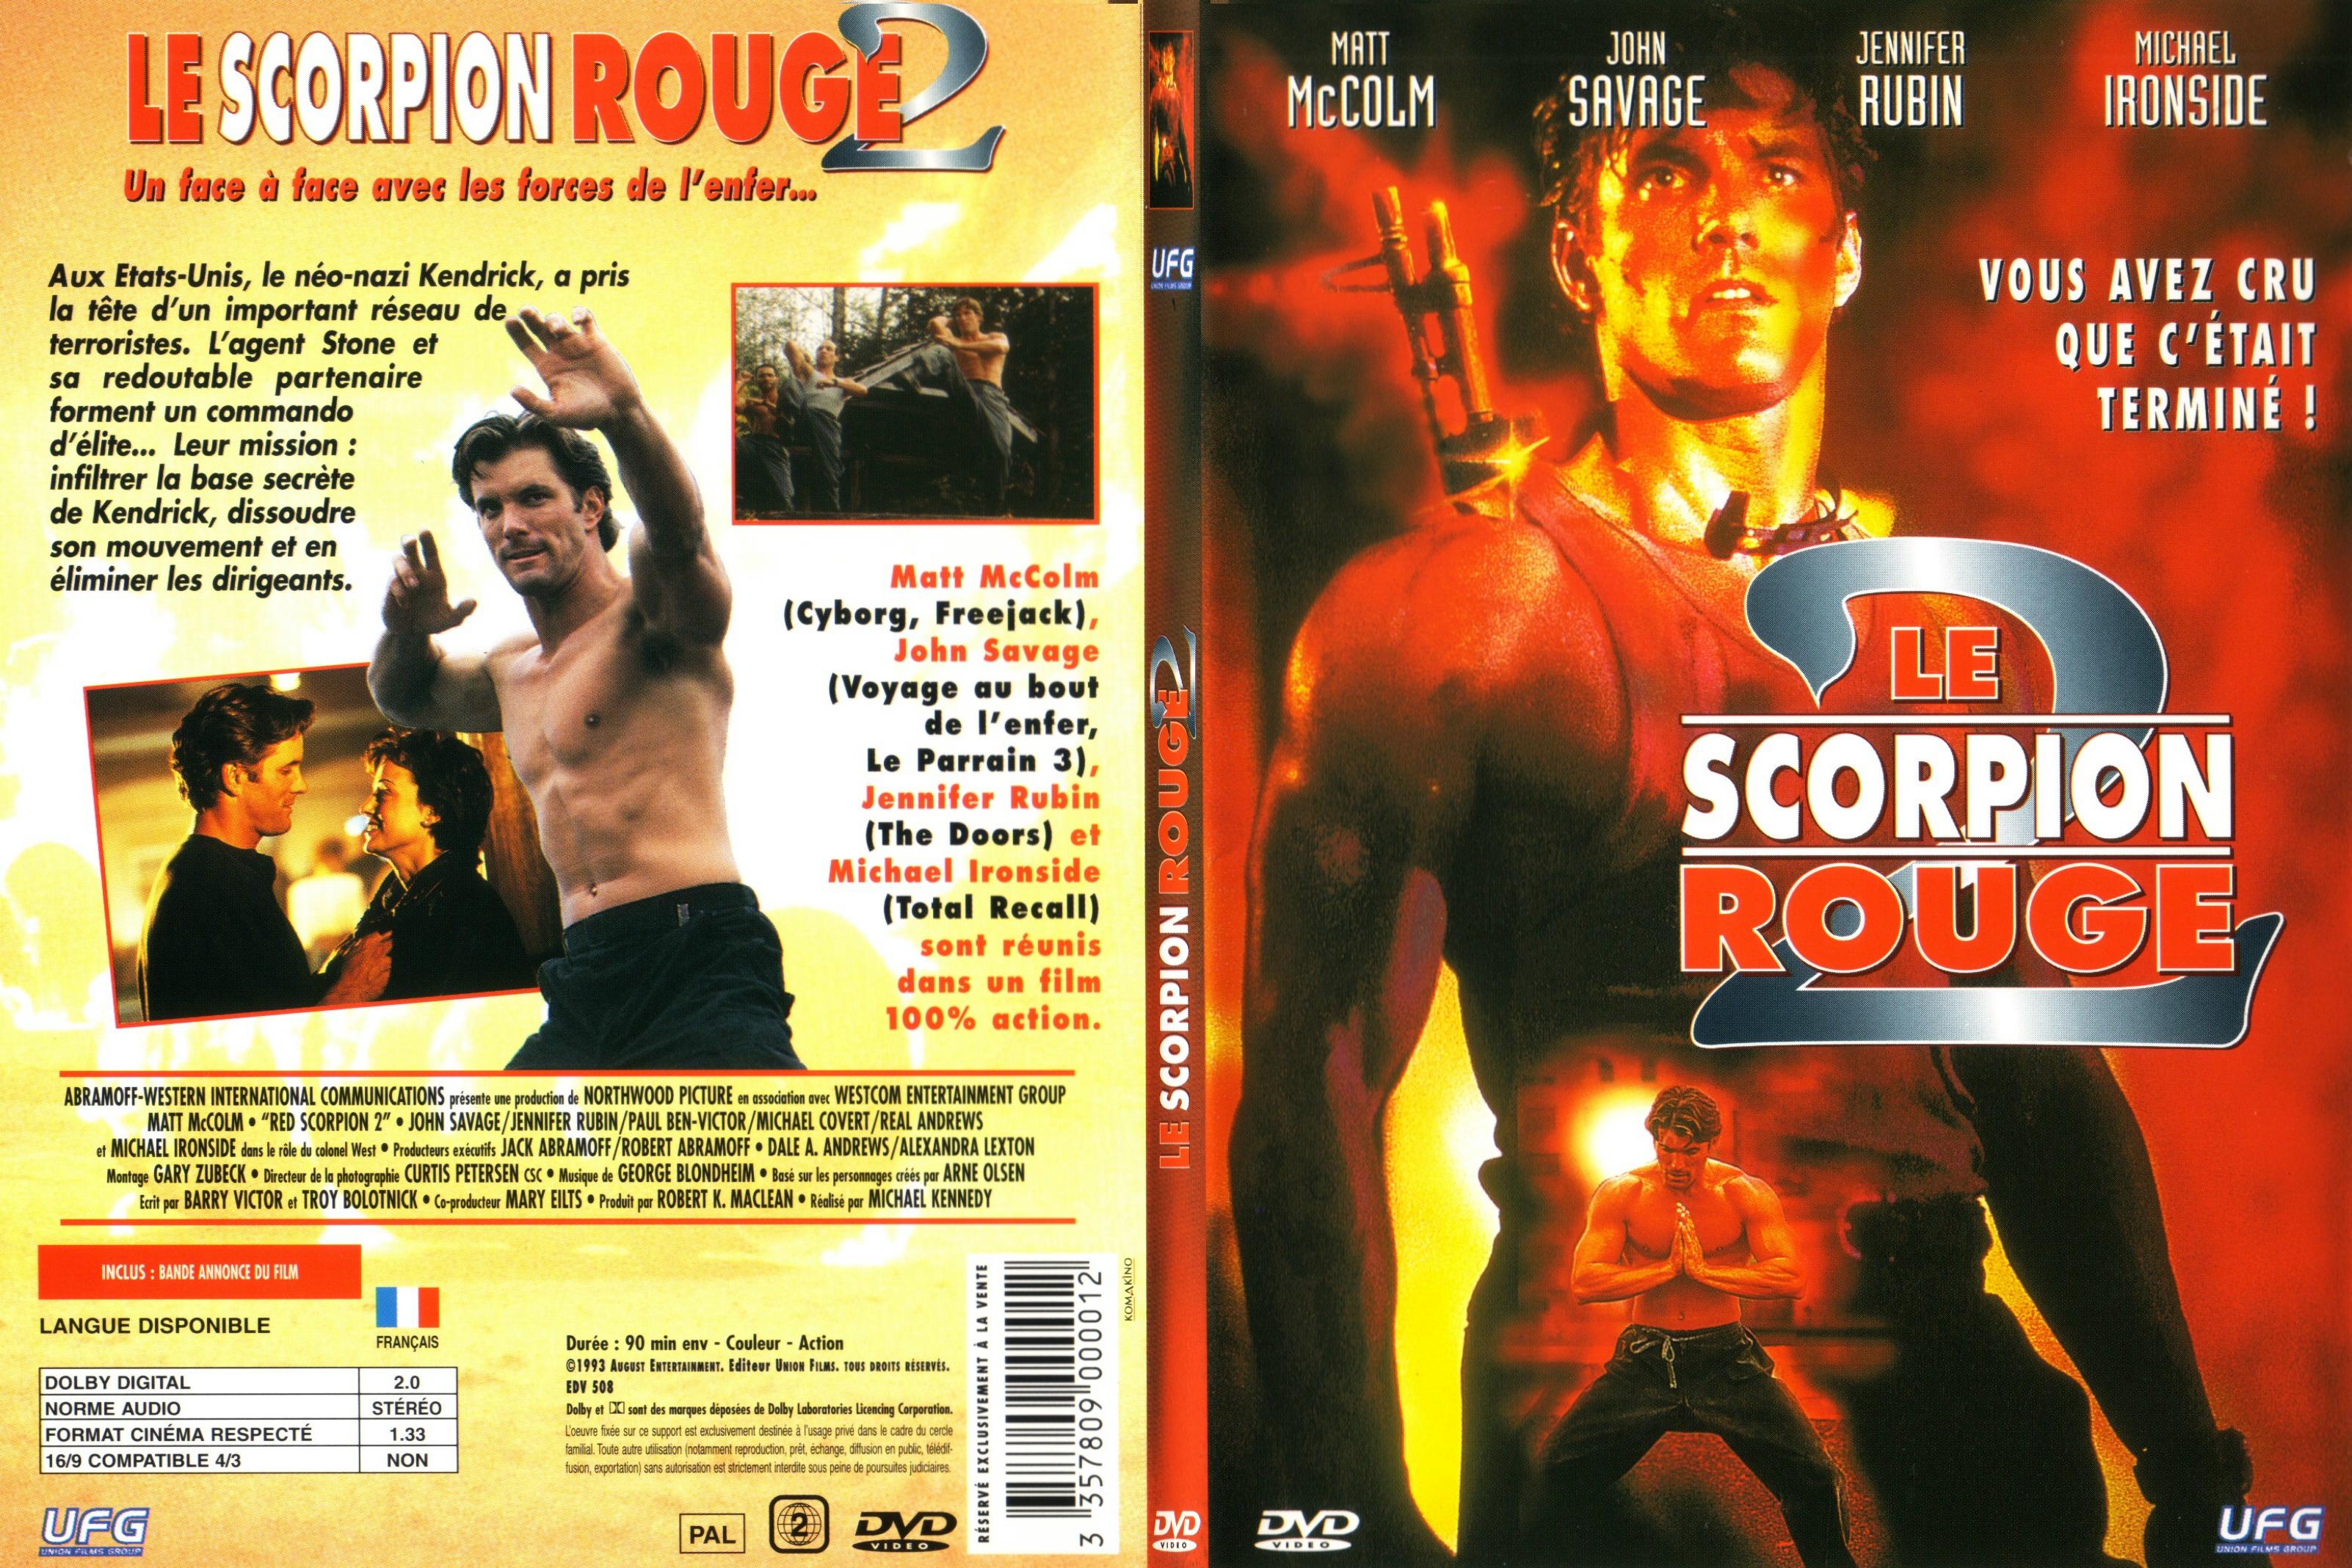 Jaquette DVD Le scorpion rouge 2 - SLIM